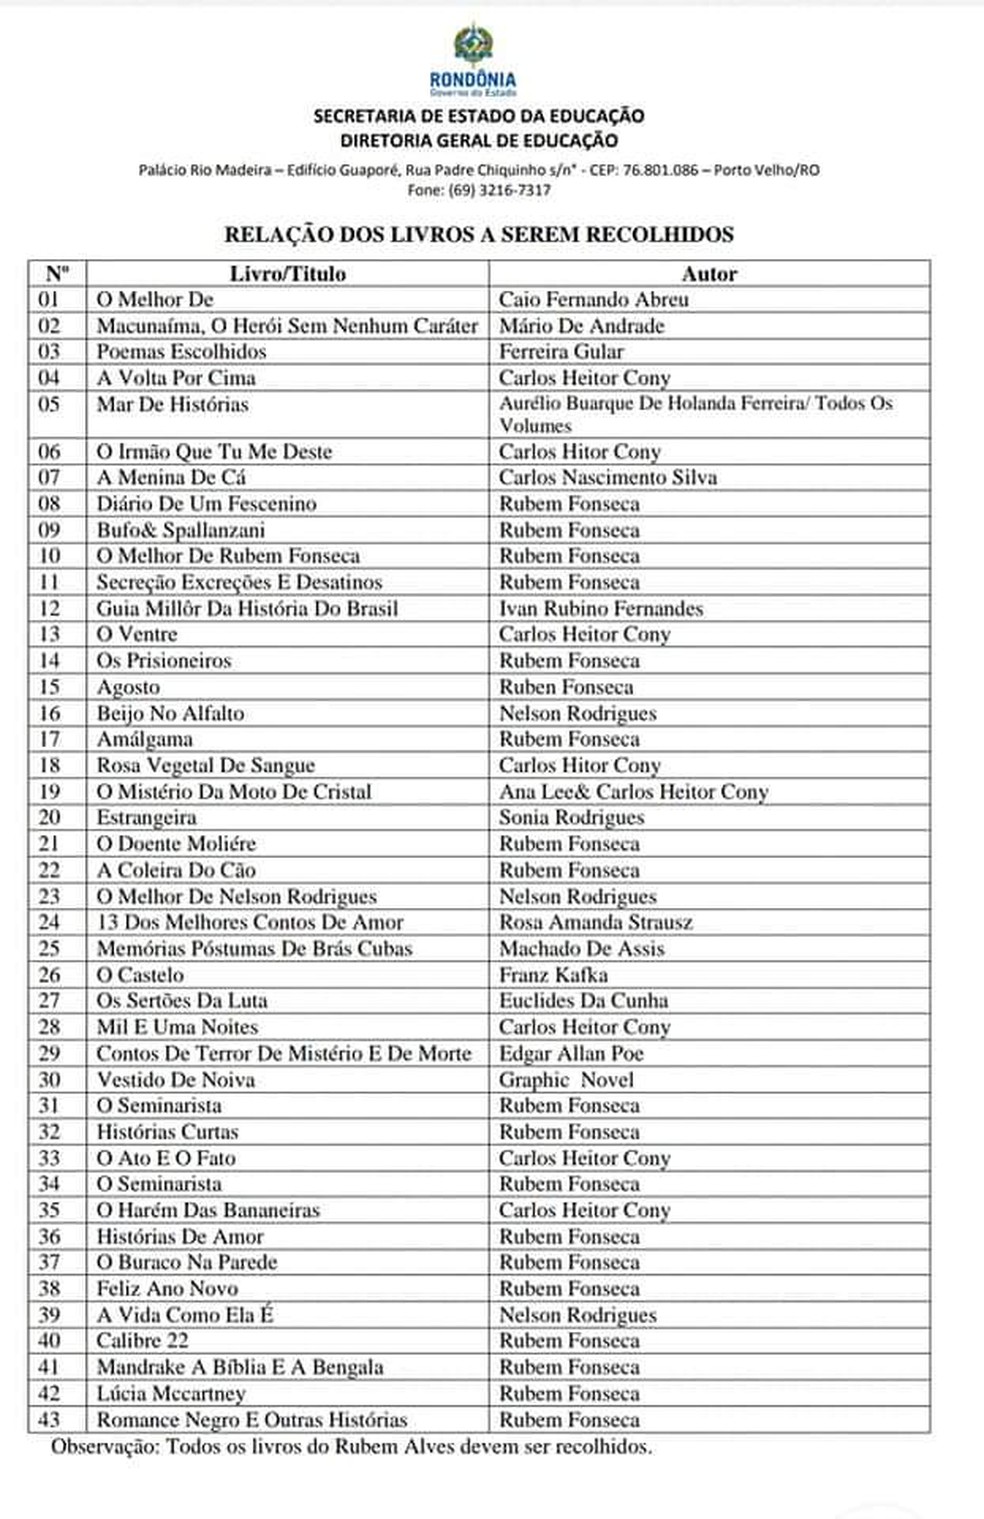 Документ Seduc показывает список из 43 книг, которые будут собраны из образовательной сети в Рондонии.  - Фото: Репродукция / Седук